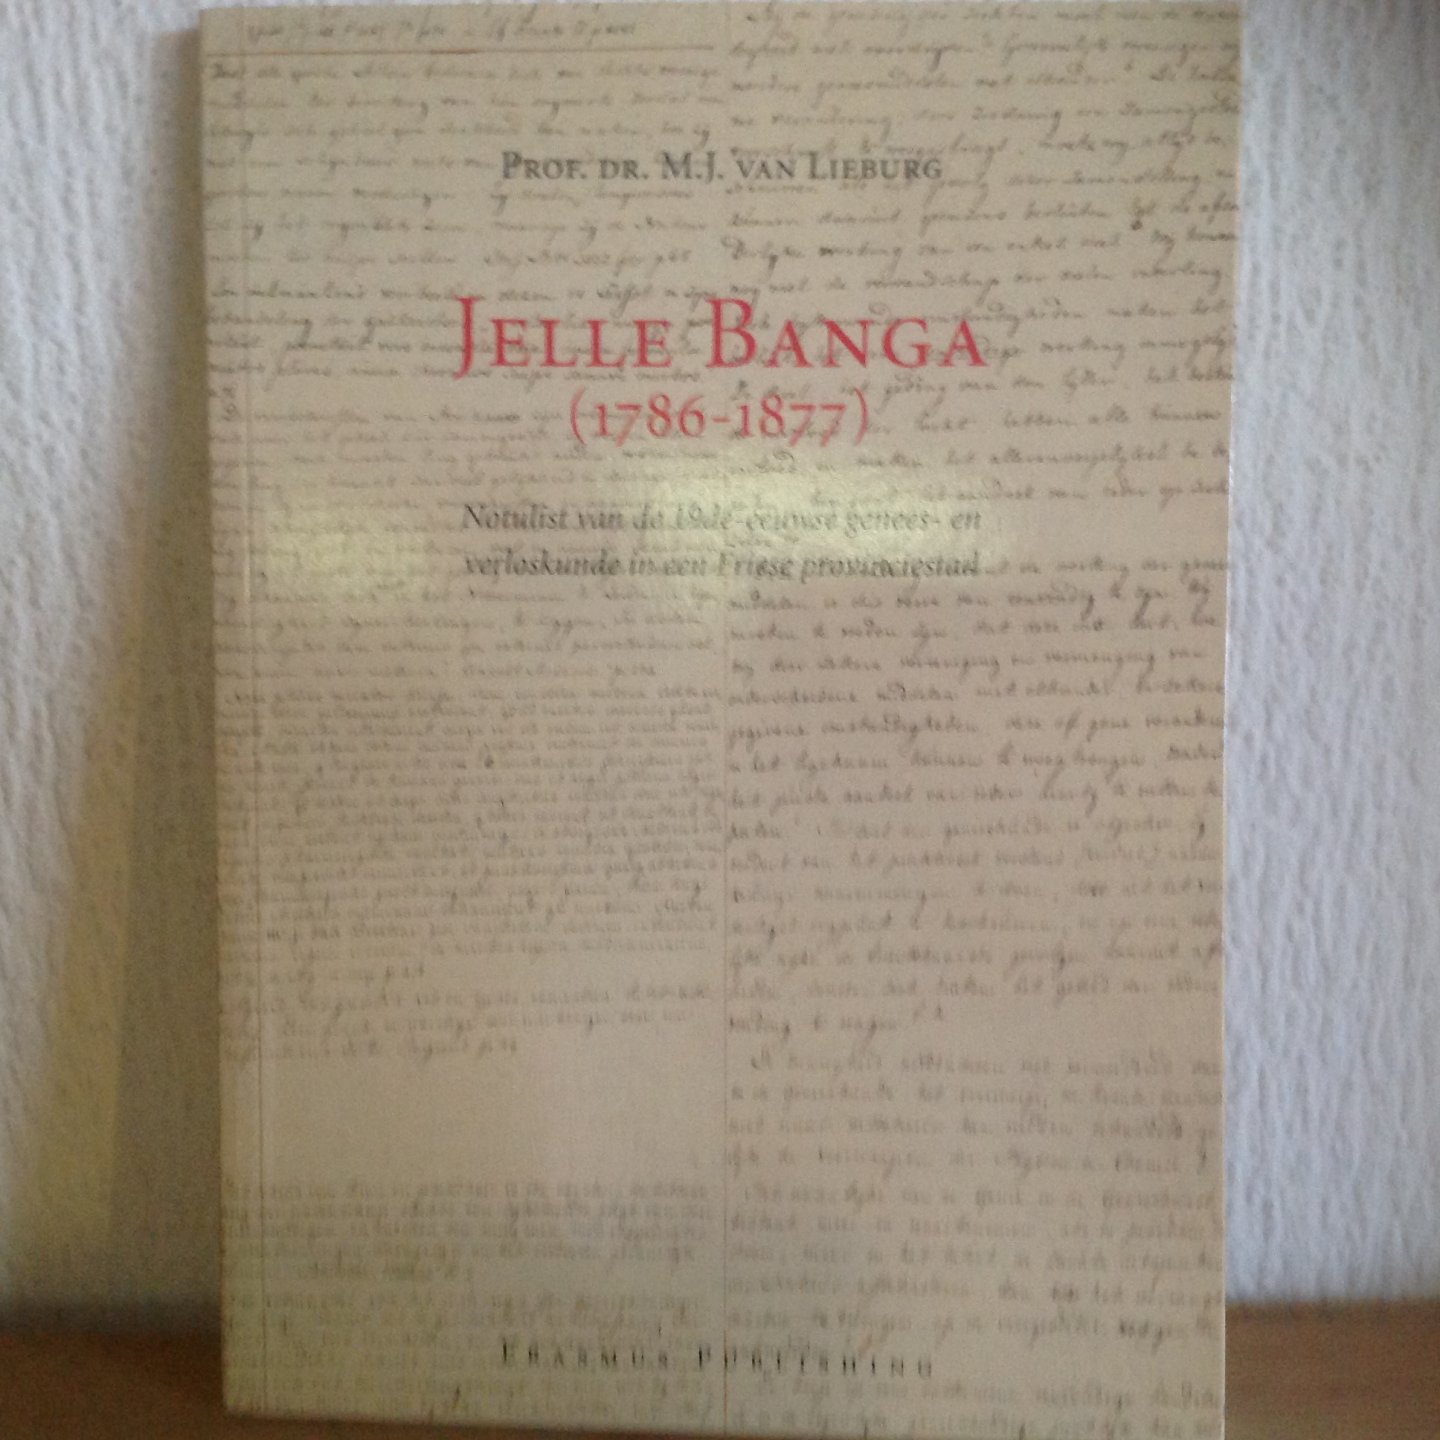  - Jelle Banga (1786-1877) / notulist van de 19de-eeuwse genees- en verloskunde in een Friese provinciestad